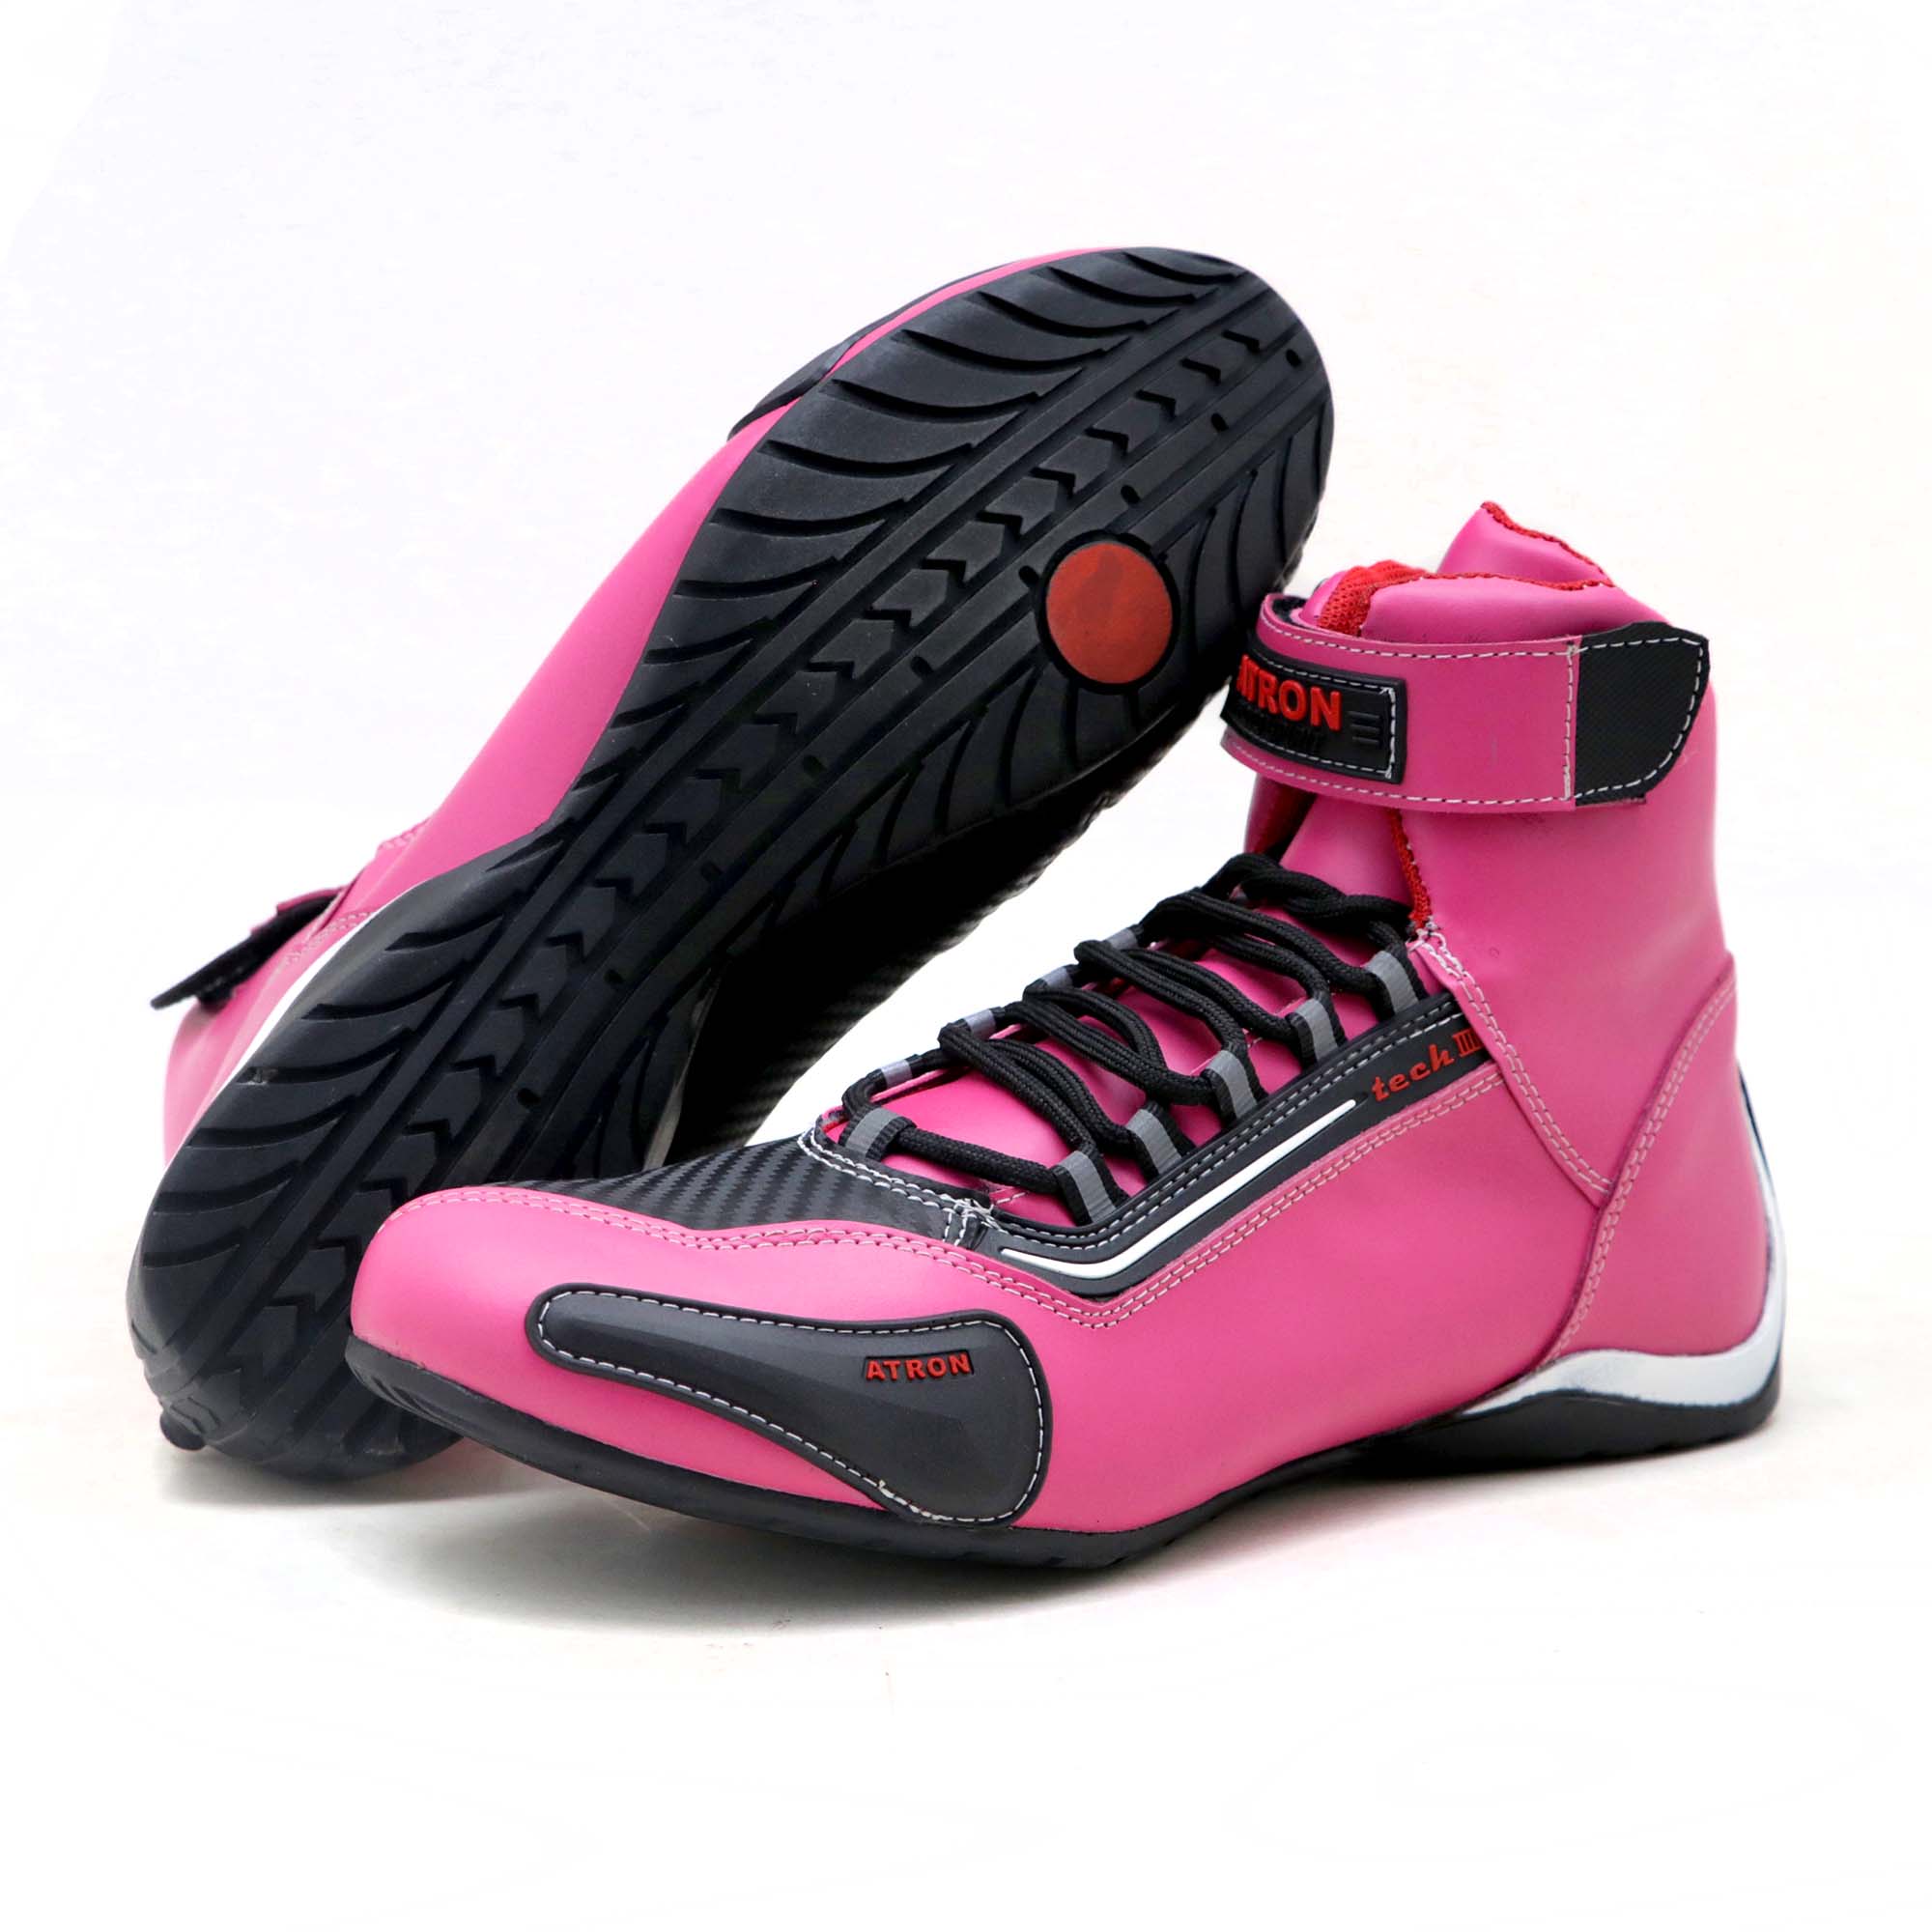 KIT CHINELO Tênis motociclista cano alto em couro legítimo nas cores pink preto 311